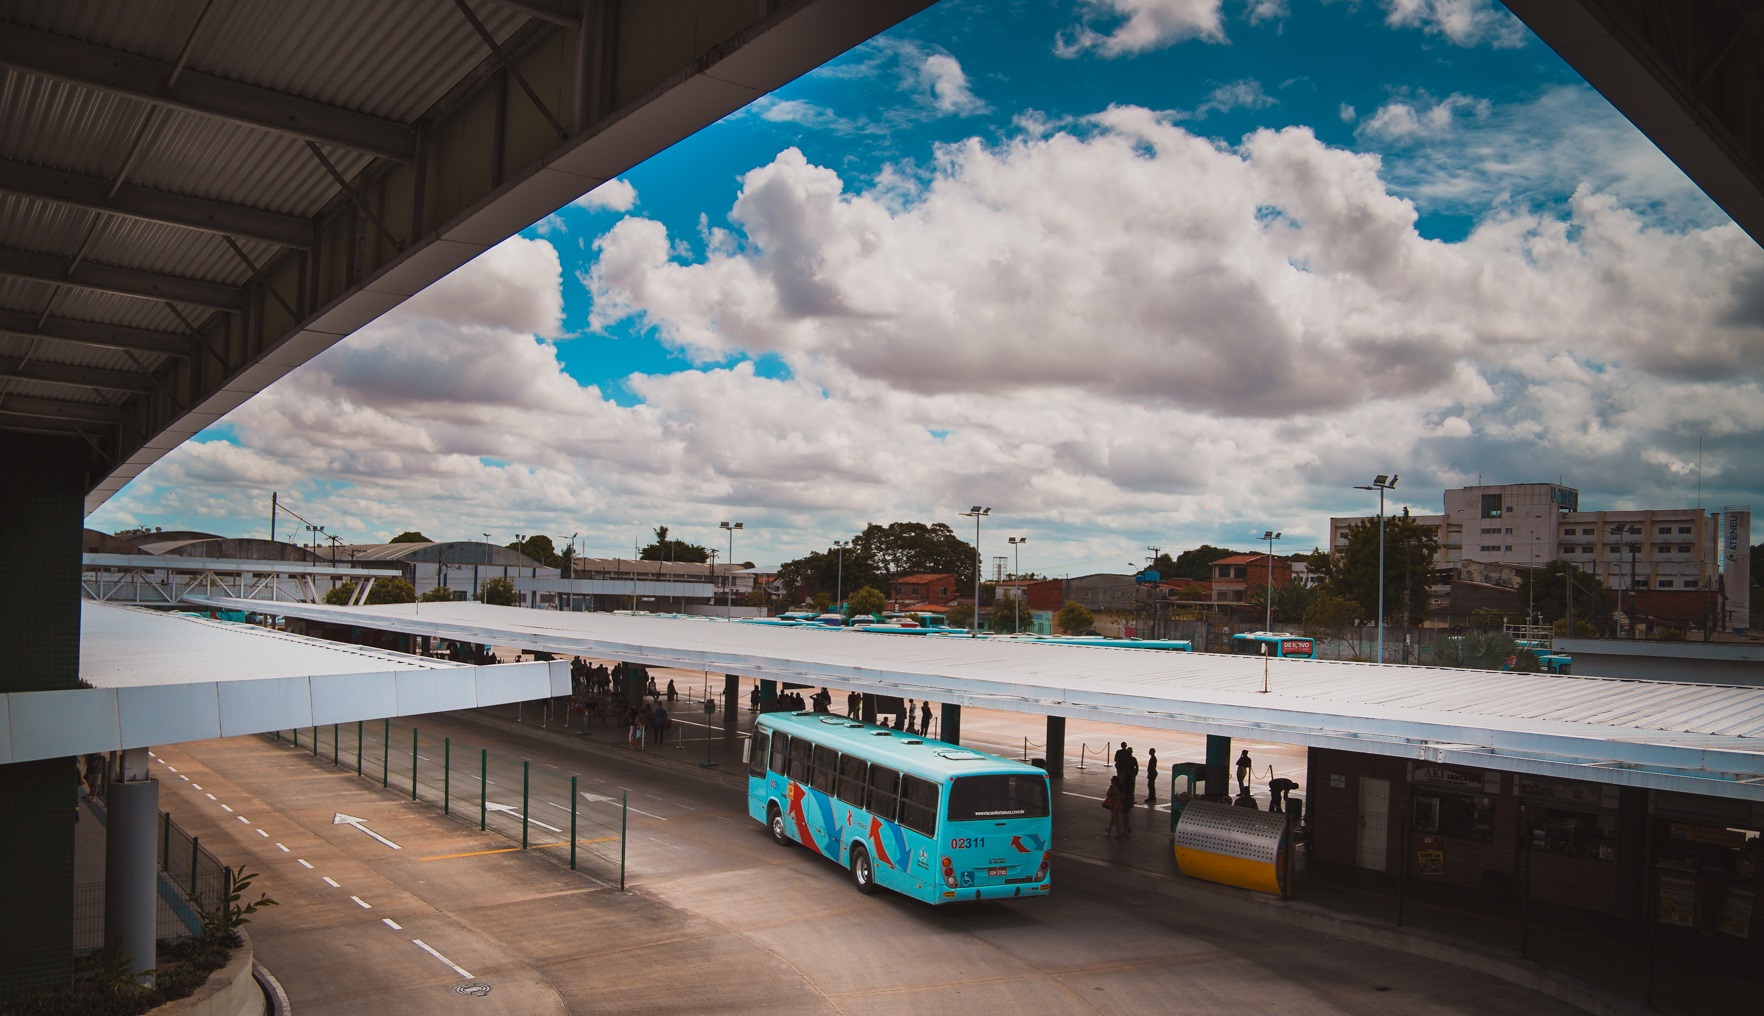 Quarta mais populosa cidade brasileira, Fortaleza, capital do Estado do Ceará, busca Parceria Público-Privada para gestão de investimentos em 10 terminais urbanos e dois corredores estruturados de transporte público. Espera-se economia de 66,97 milhões de dólares em 30 anos